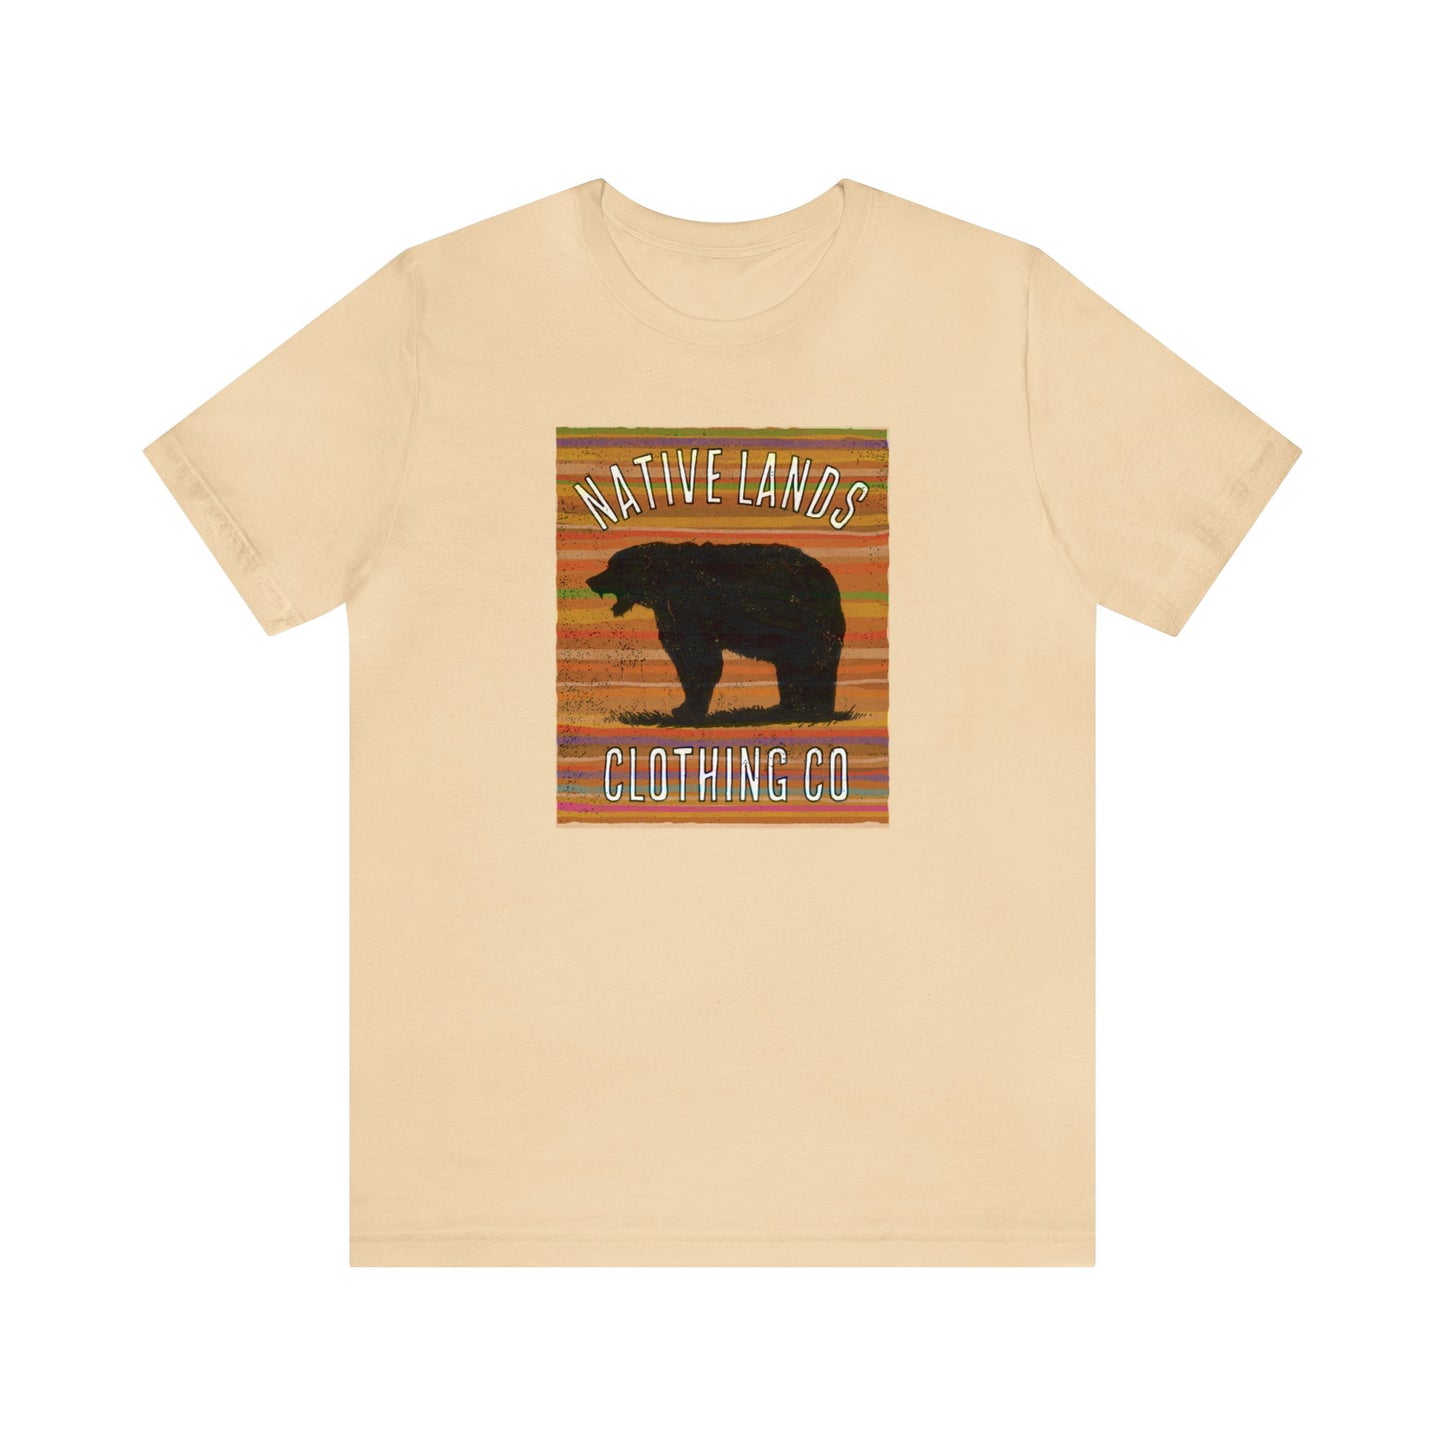 熊咆哮衬衫地球棉美洲原住民